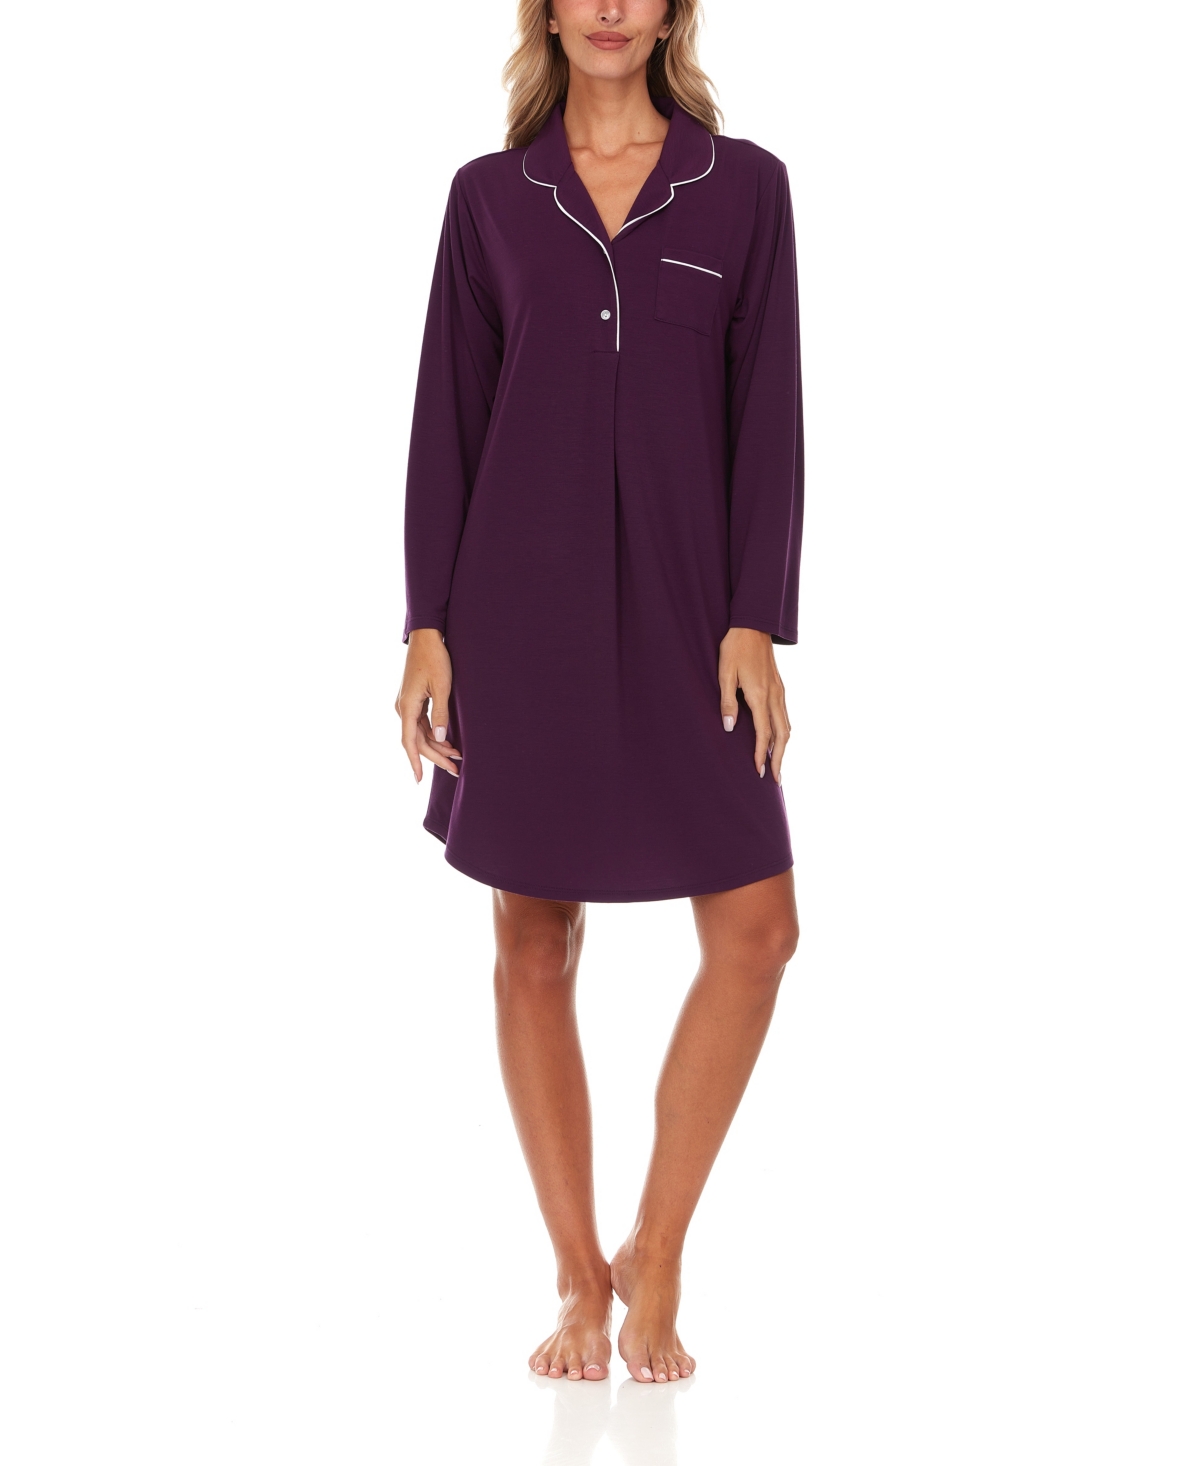 Women's Deborah Long Sleeve Notch Knit Sleepshirt Nightgown - Plum